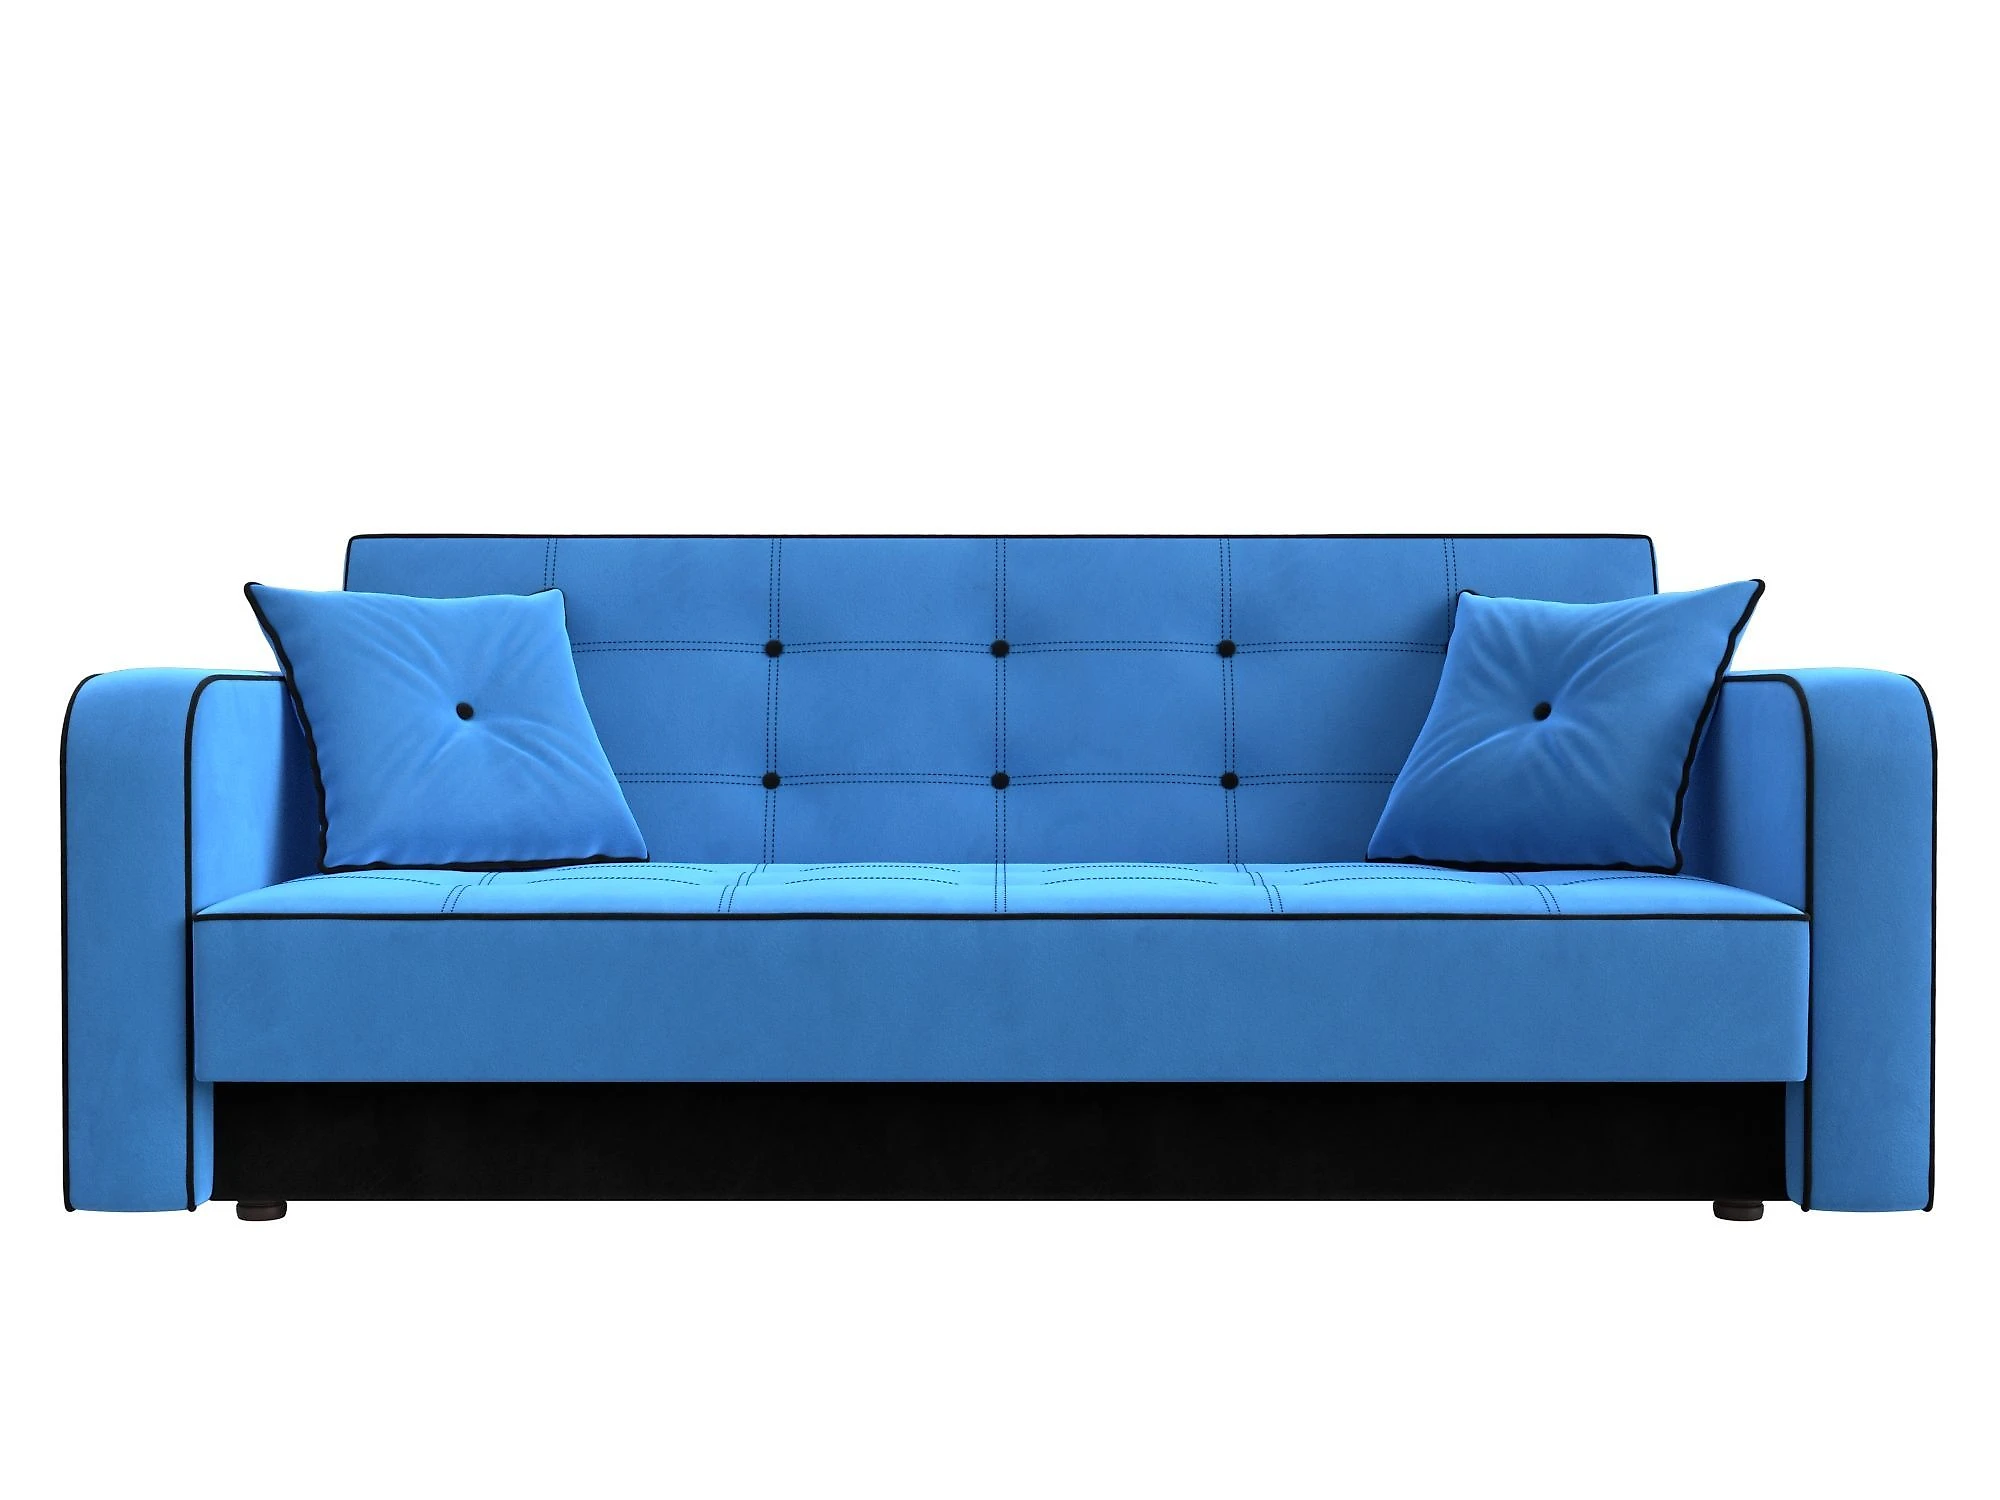  голубой диван  Тур Плюш Дизайн 3